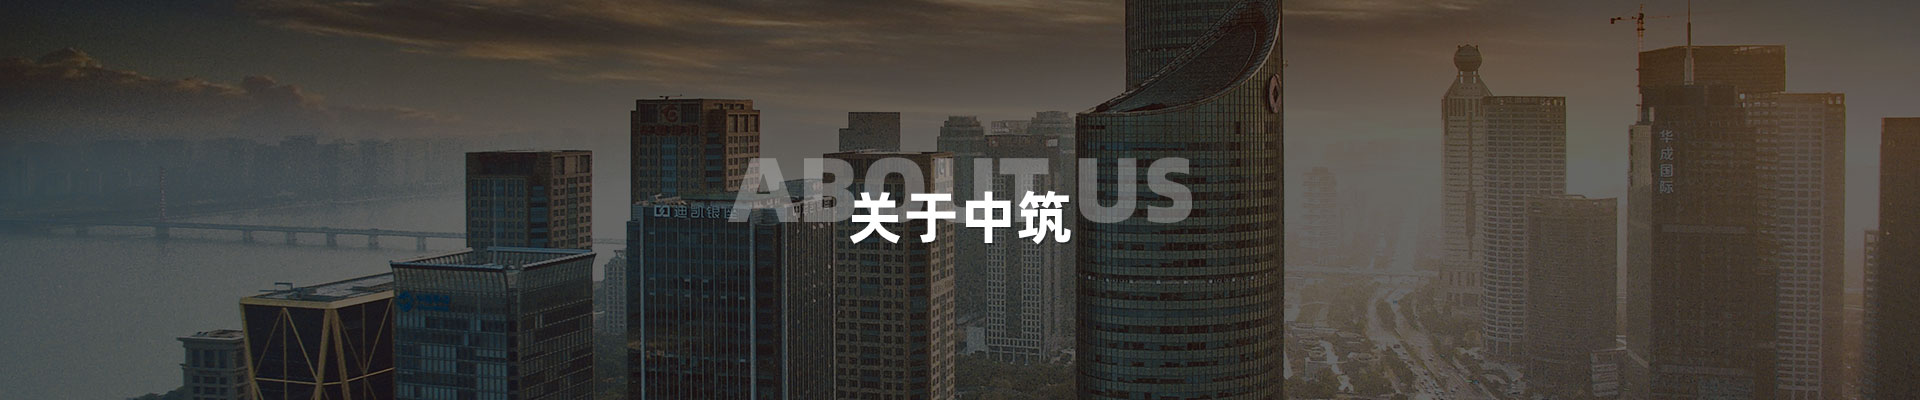 景观亮化公司-深圳市中筑景观亮化照明科技有限公司